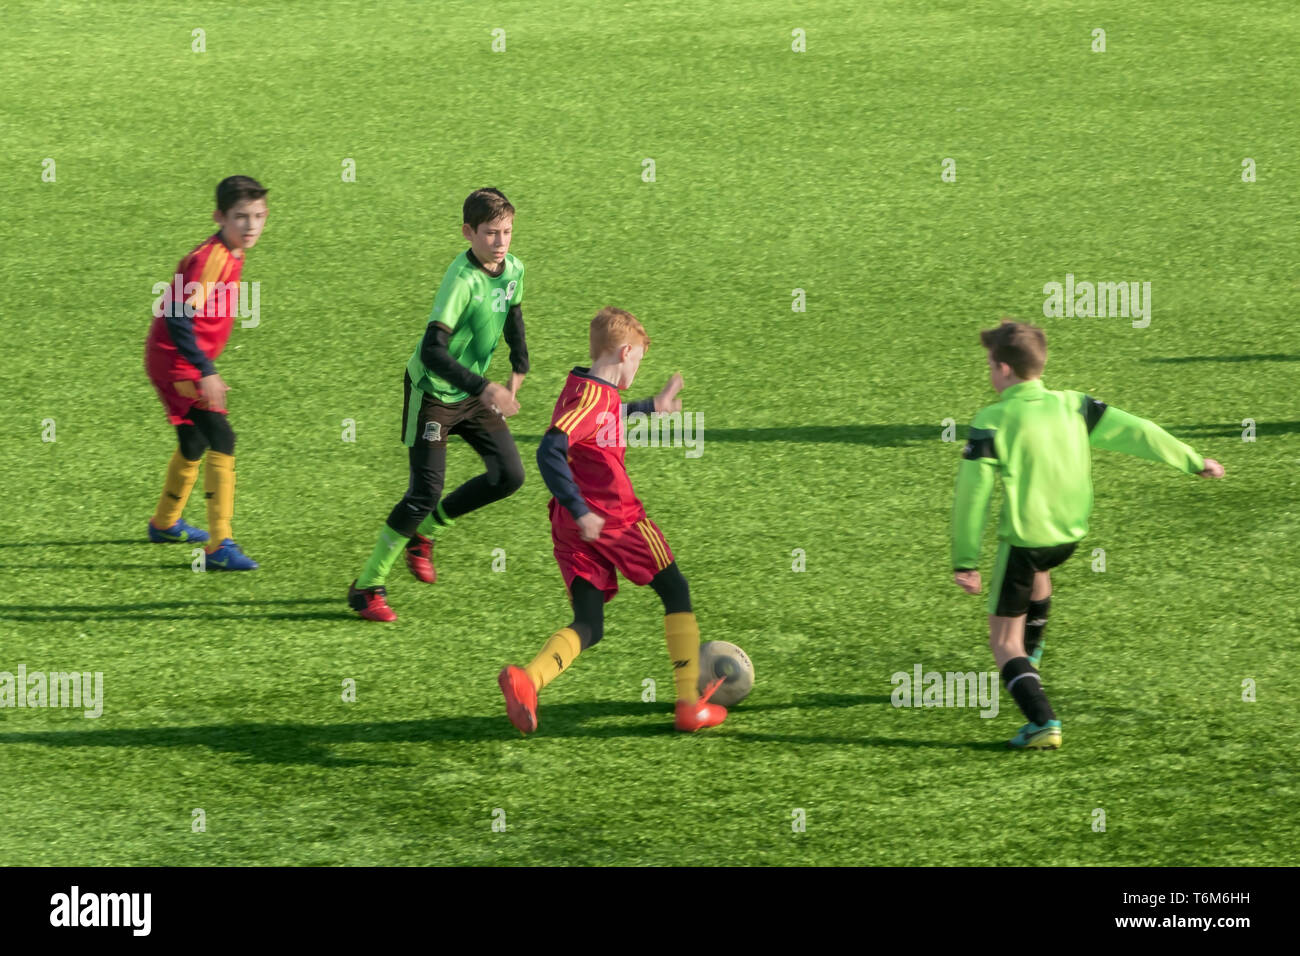 Kropotkin, die Region Krasnodar, Russland - 10. Februar 2018. Fussball sport Wettbewerb zwischen Jugend Mannschaften. Stockfoto